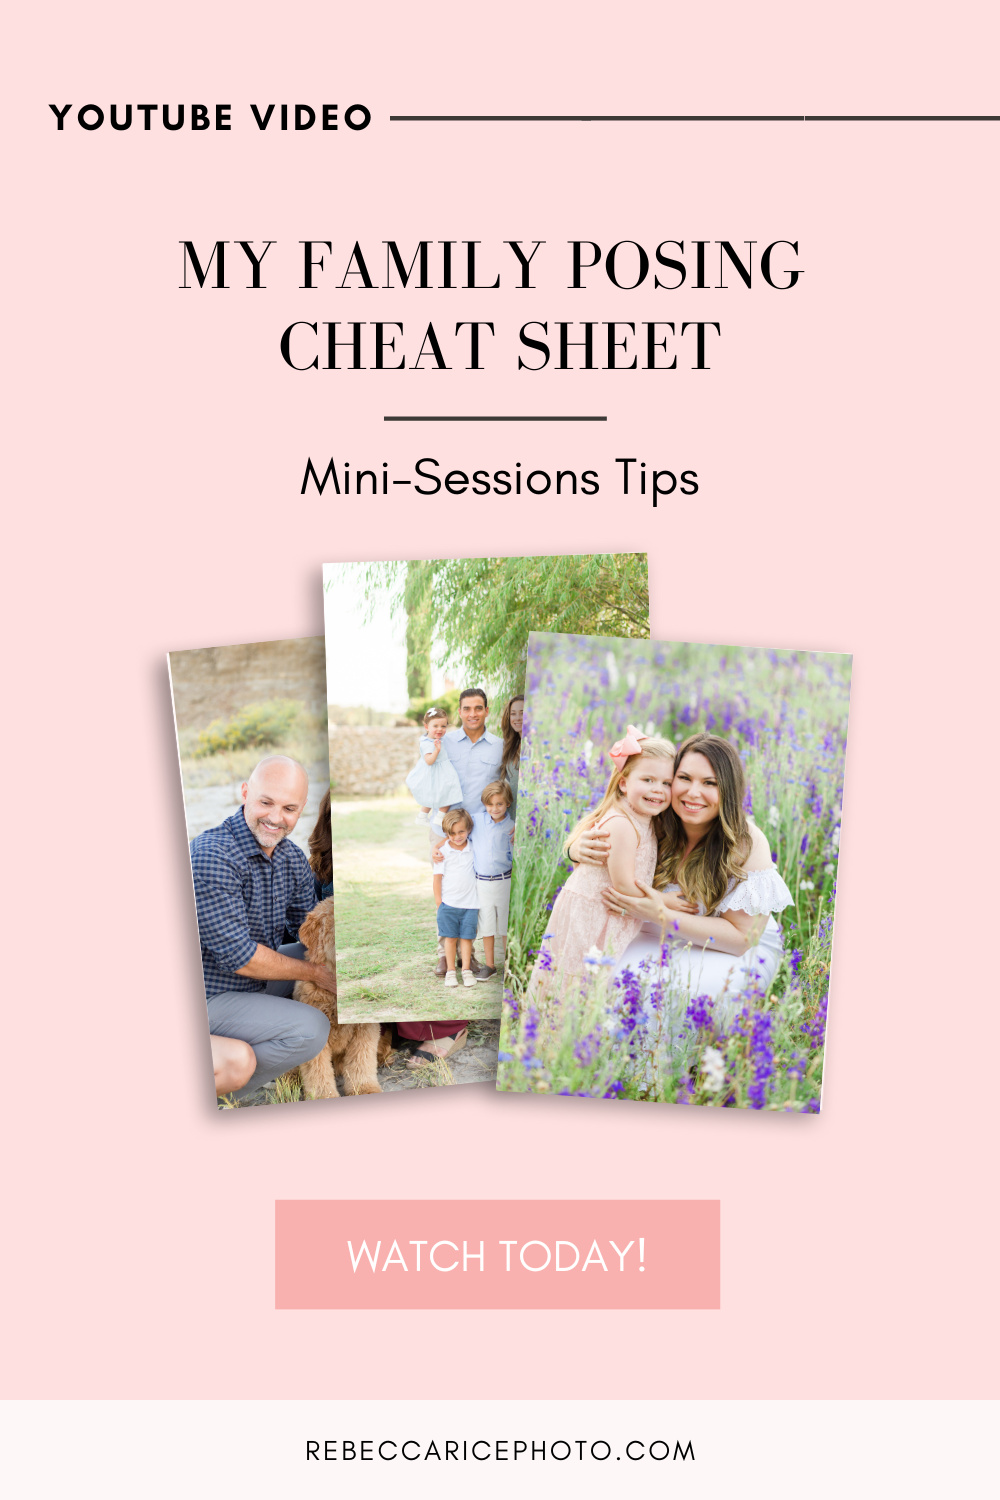 My Family Posing Cheat Sheet | Family Posing Tips